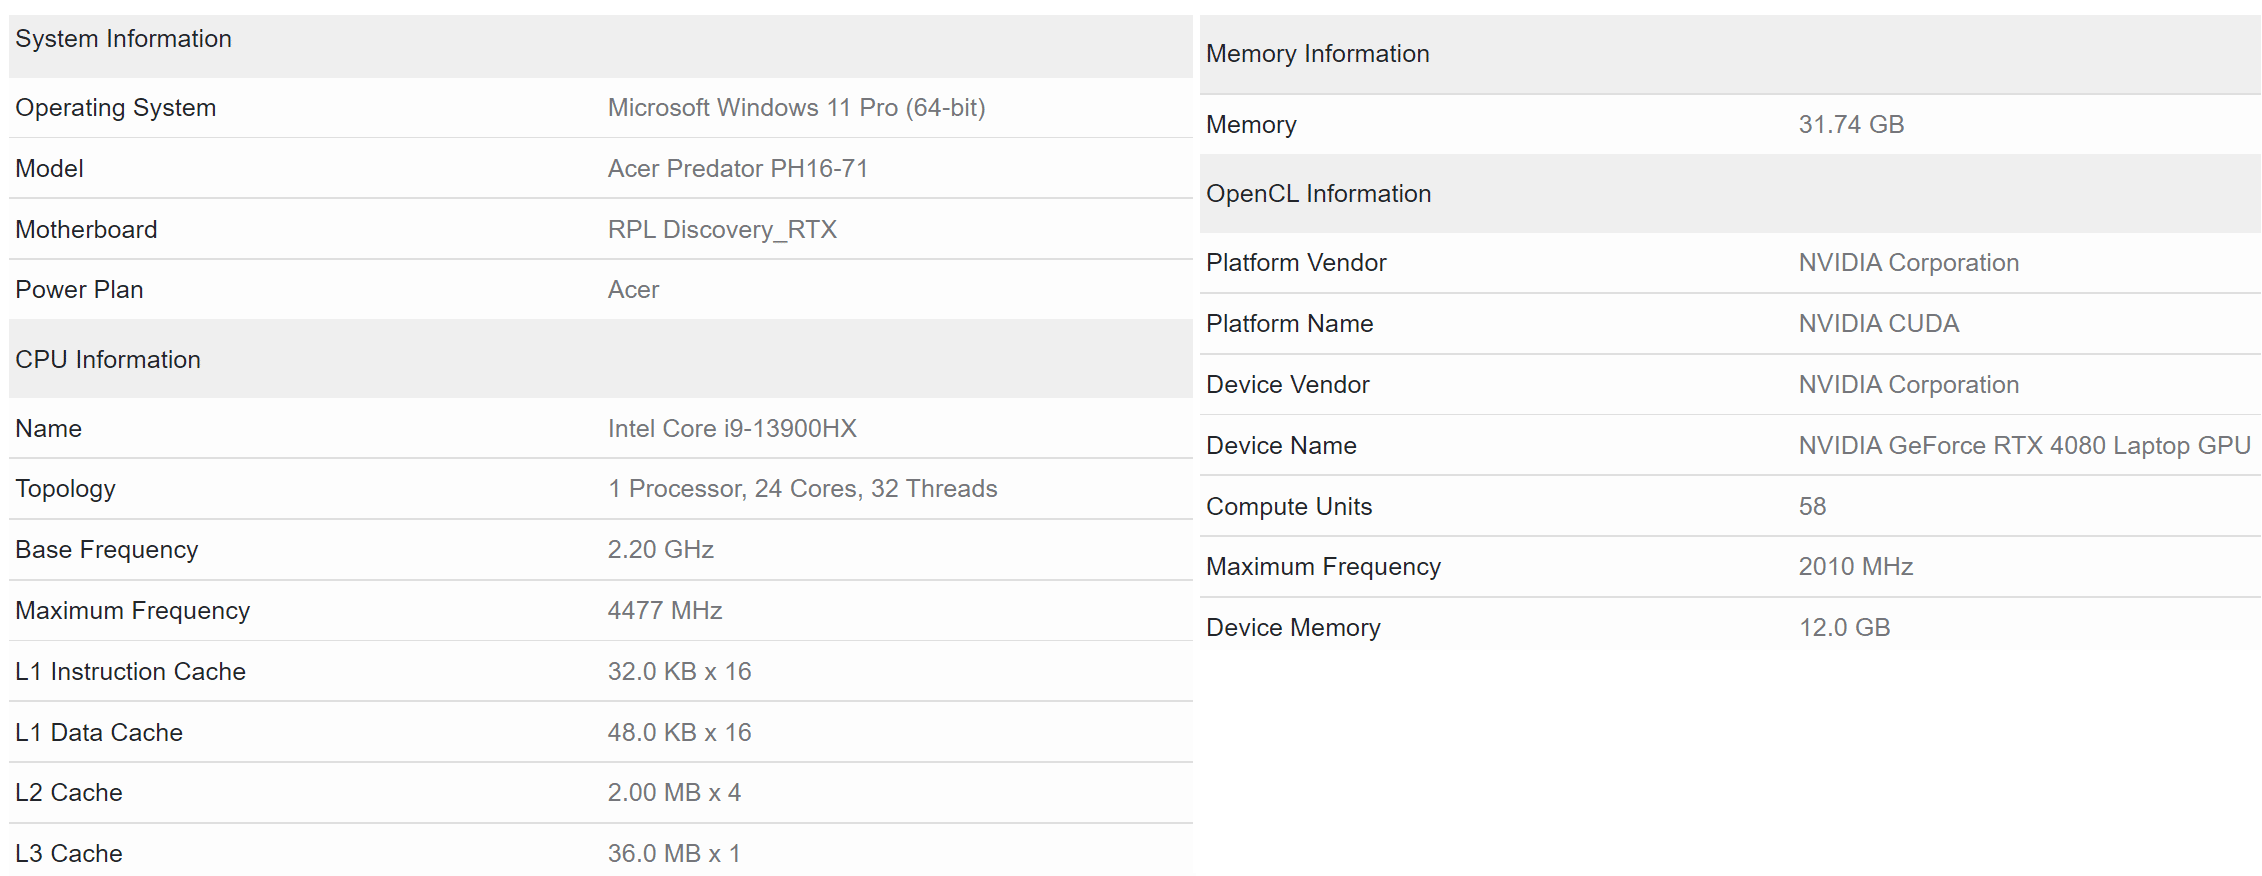 NVIDIA GeForce RTX 4080 Laptop GPU Features 7424 CUDAs, +42% Over Predecessor 26